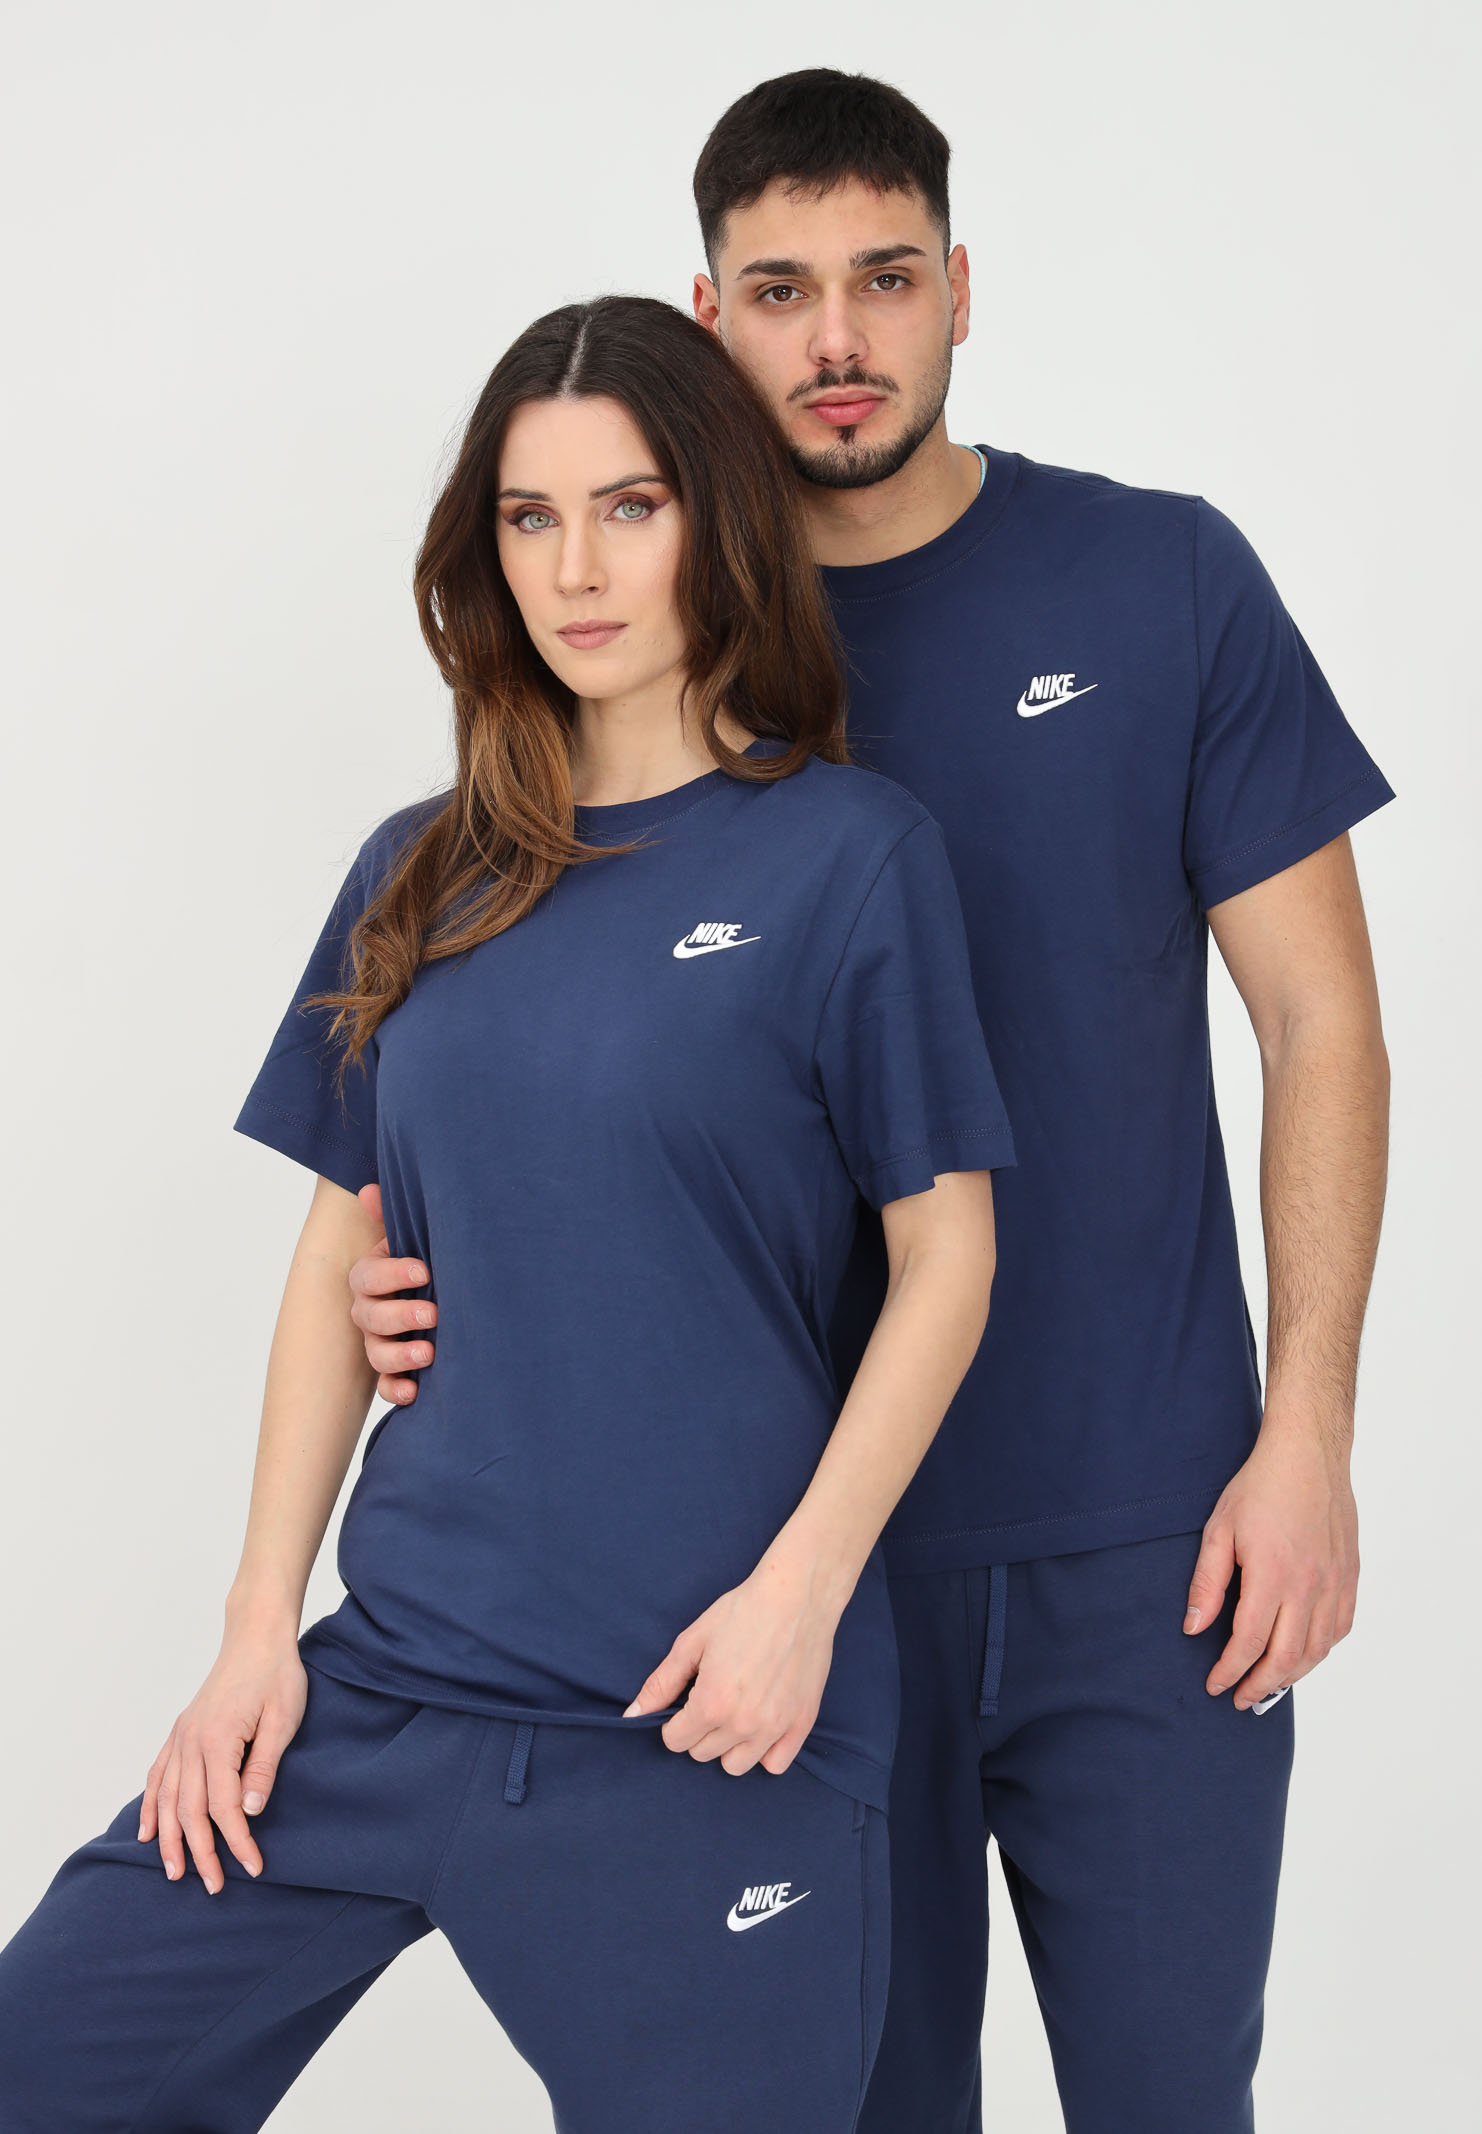 Nike Sportswear Club blue t-shirt for men and women - NIKE - Pavidas